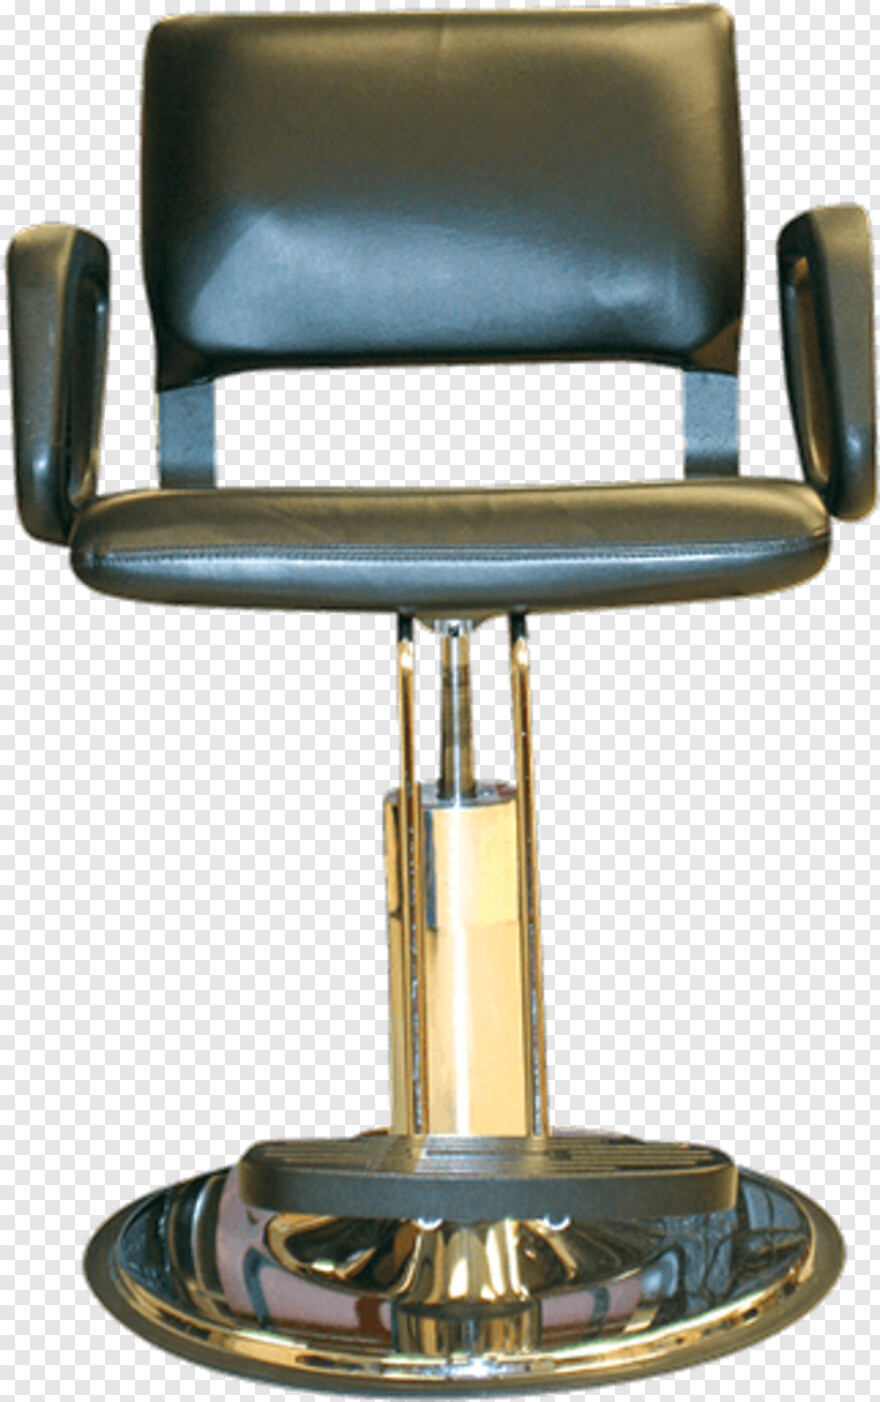 beach-chair # 1040915